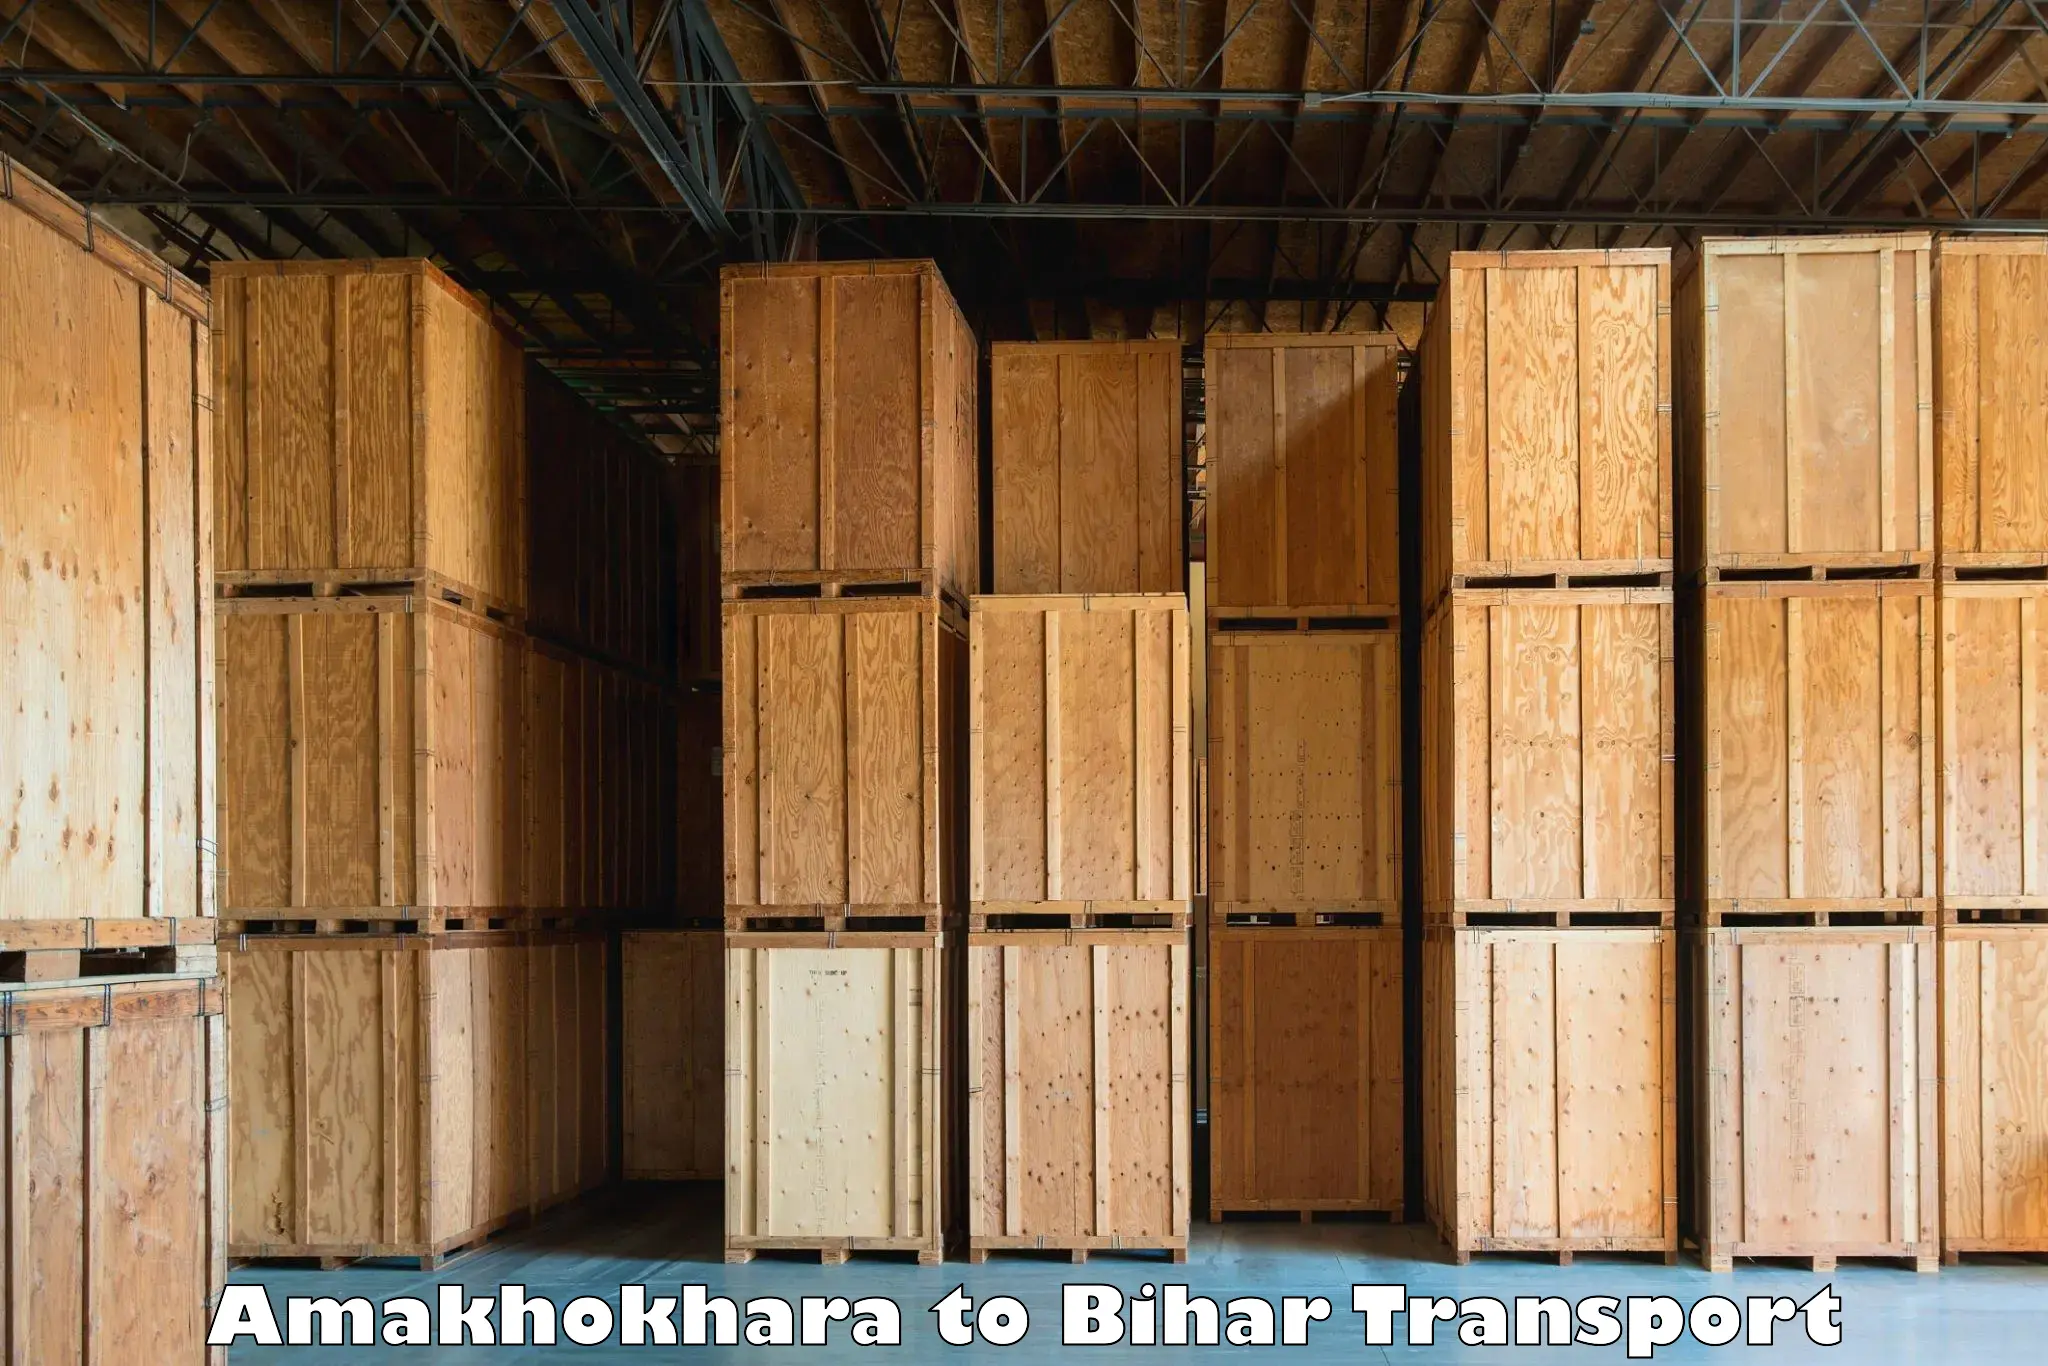 All India transport service Amakhokhara to Gopalganj